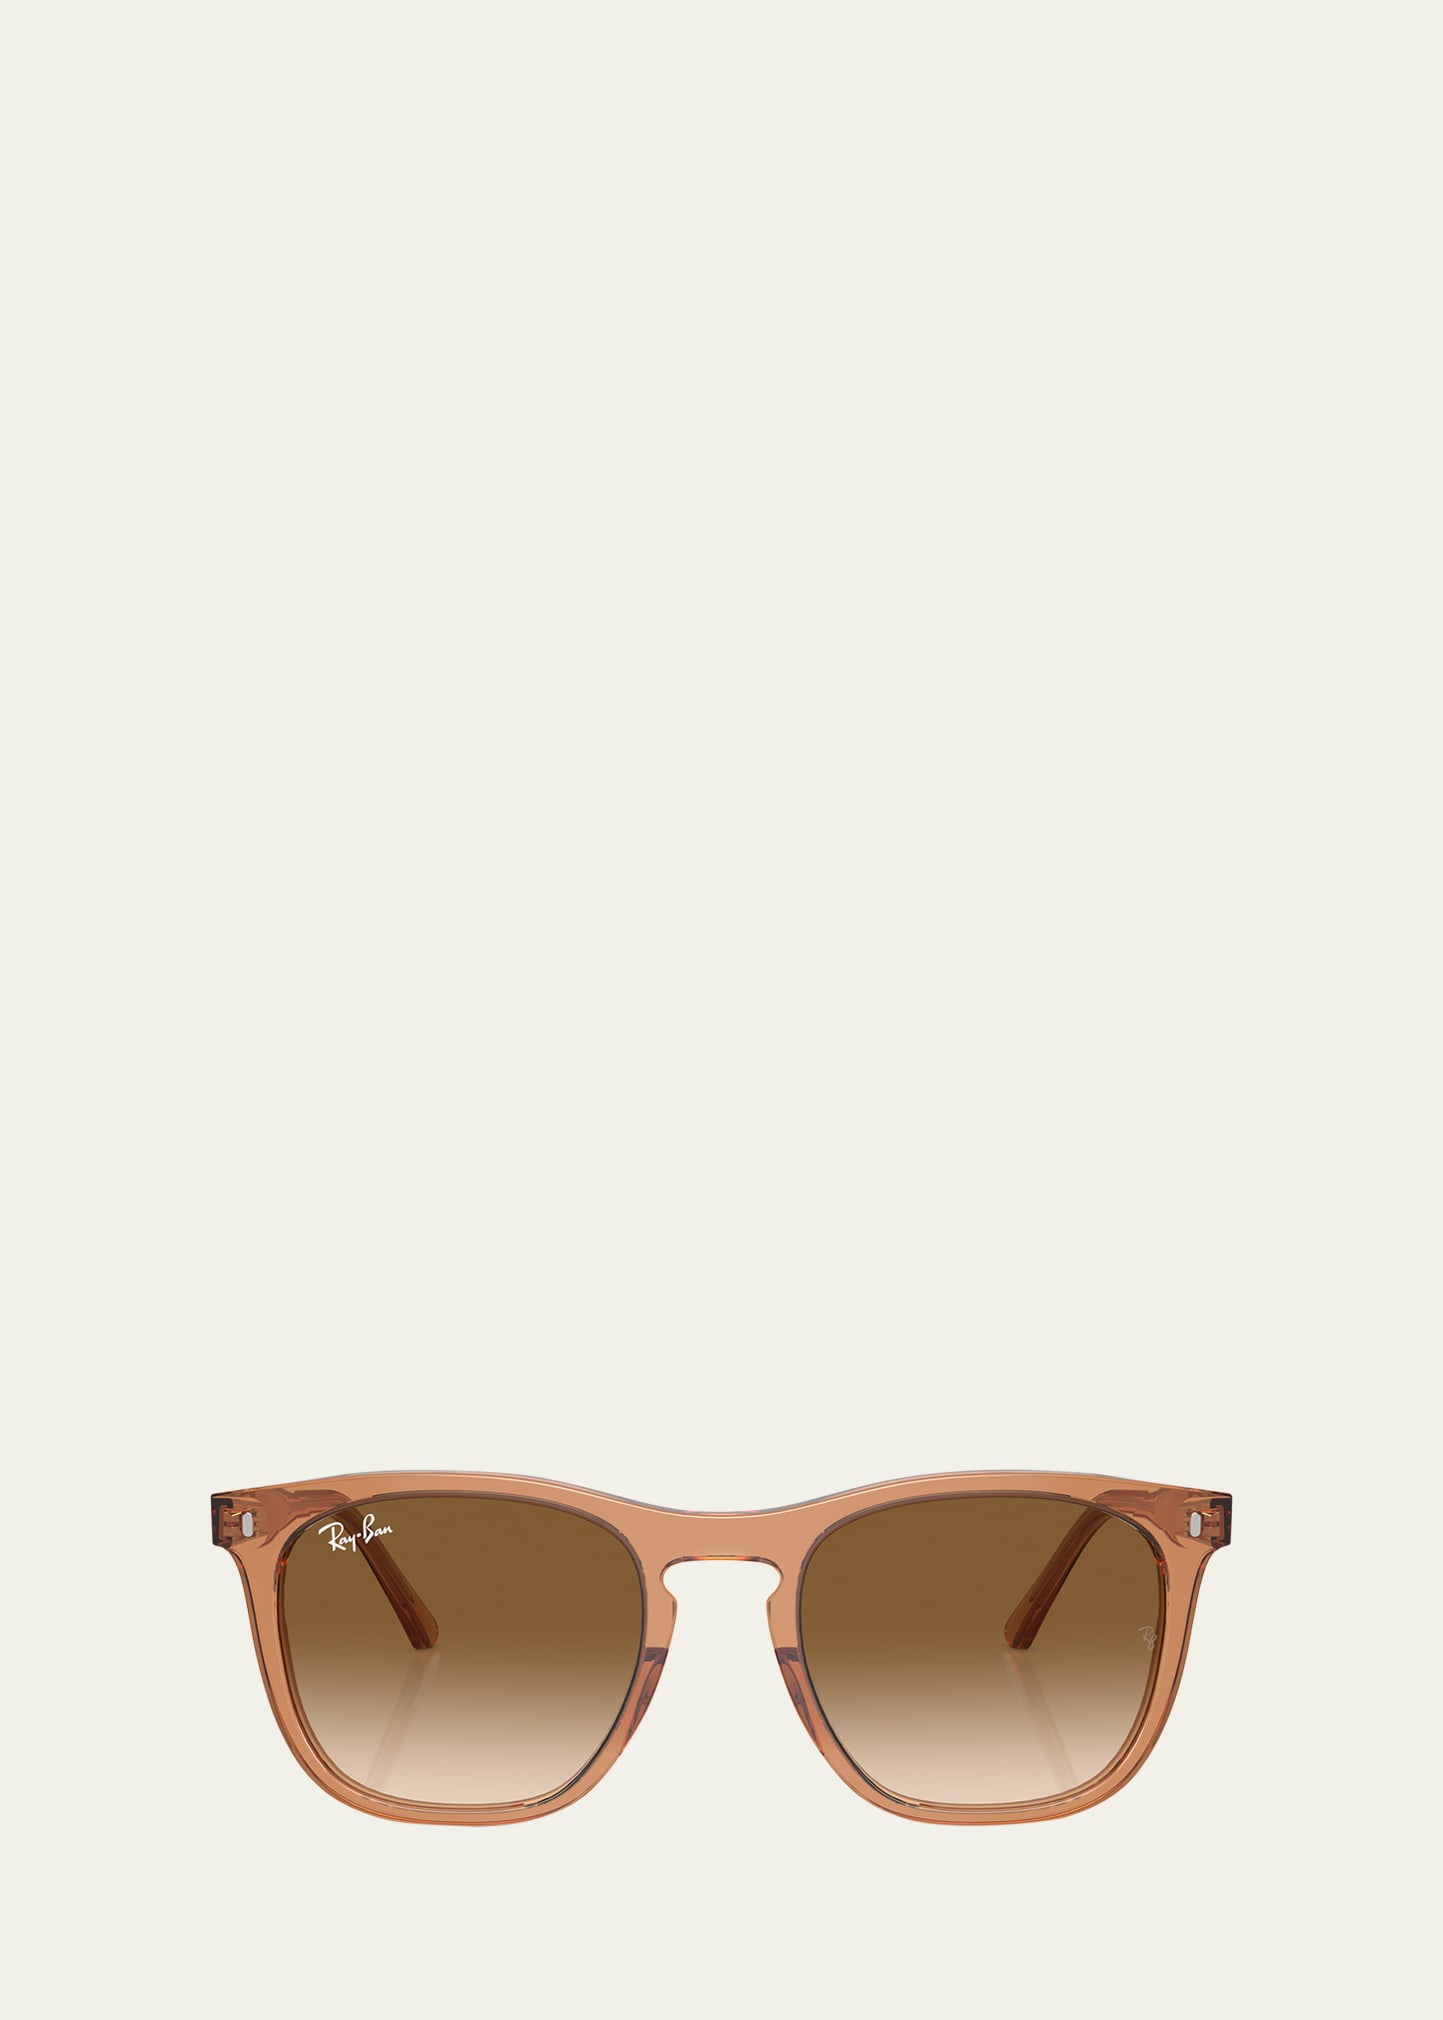 Gradient Plastic Square Sunglasses, 53mm